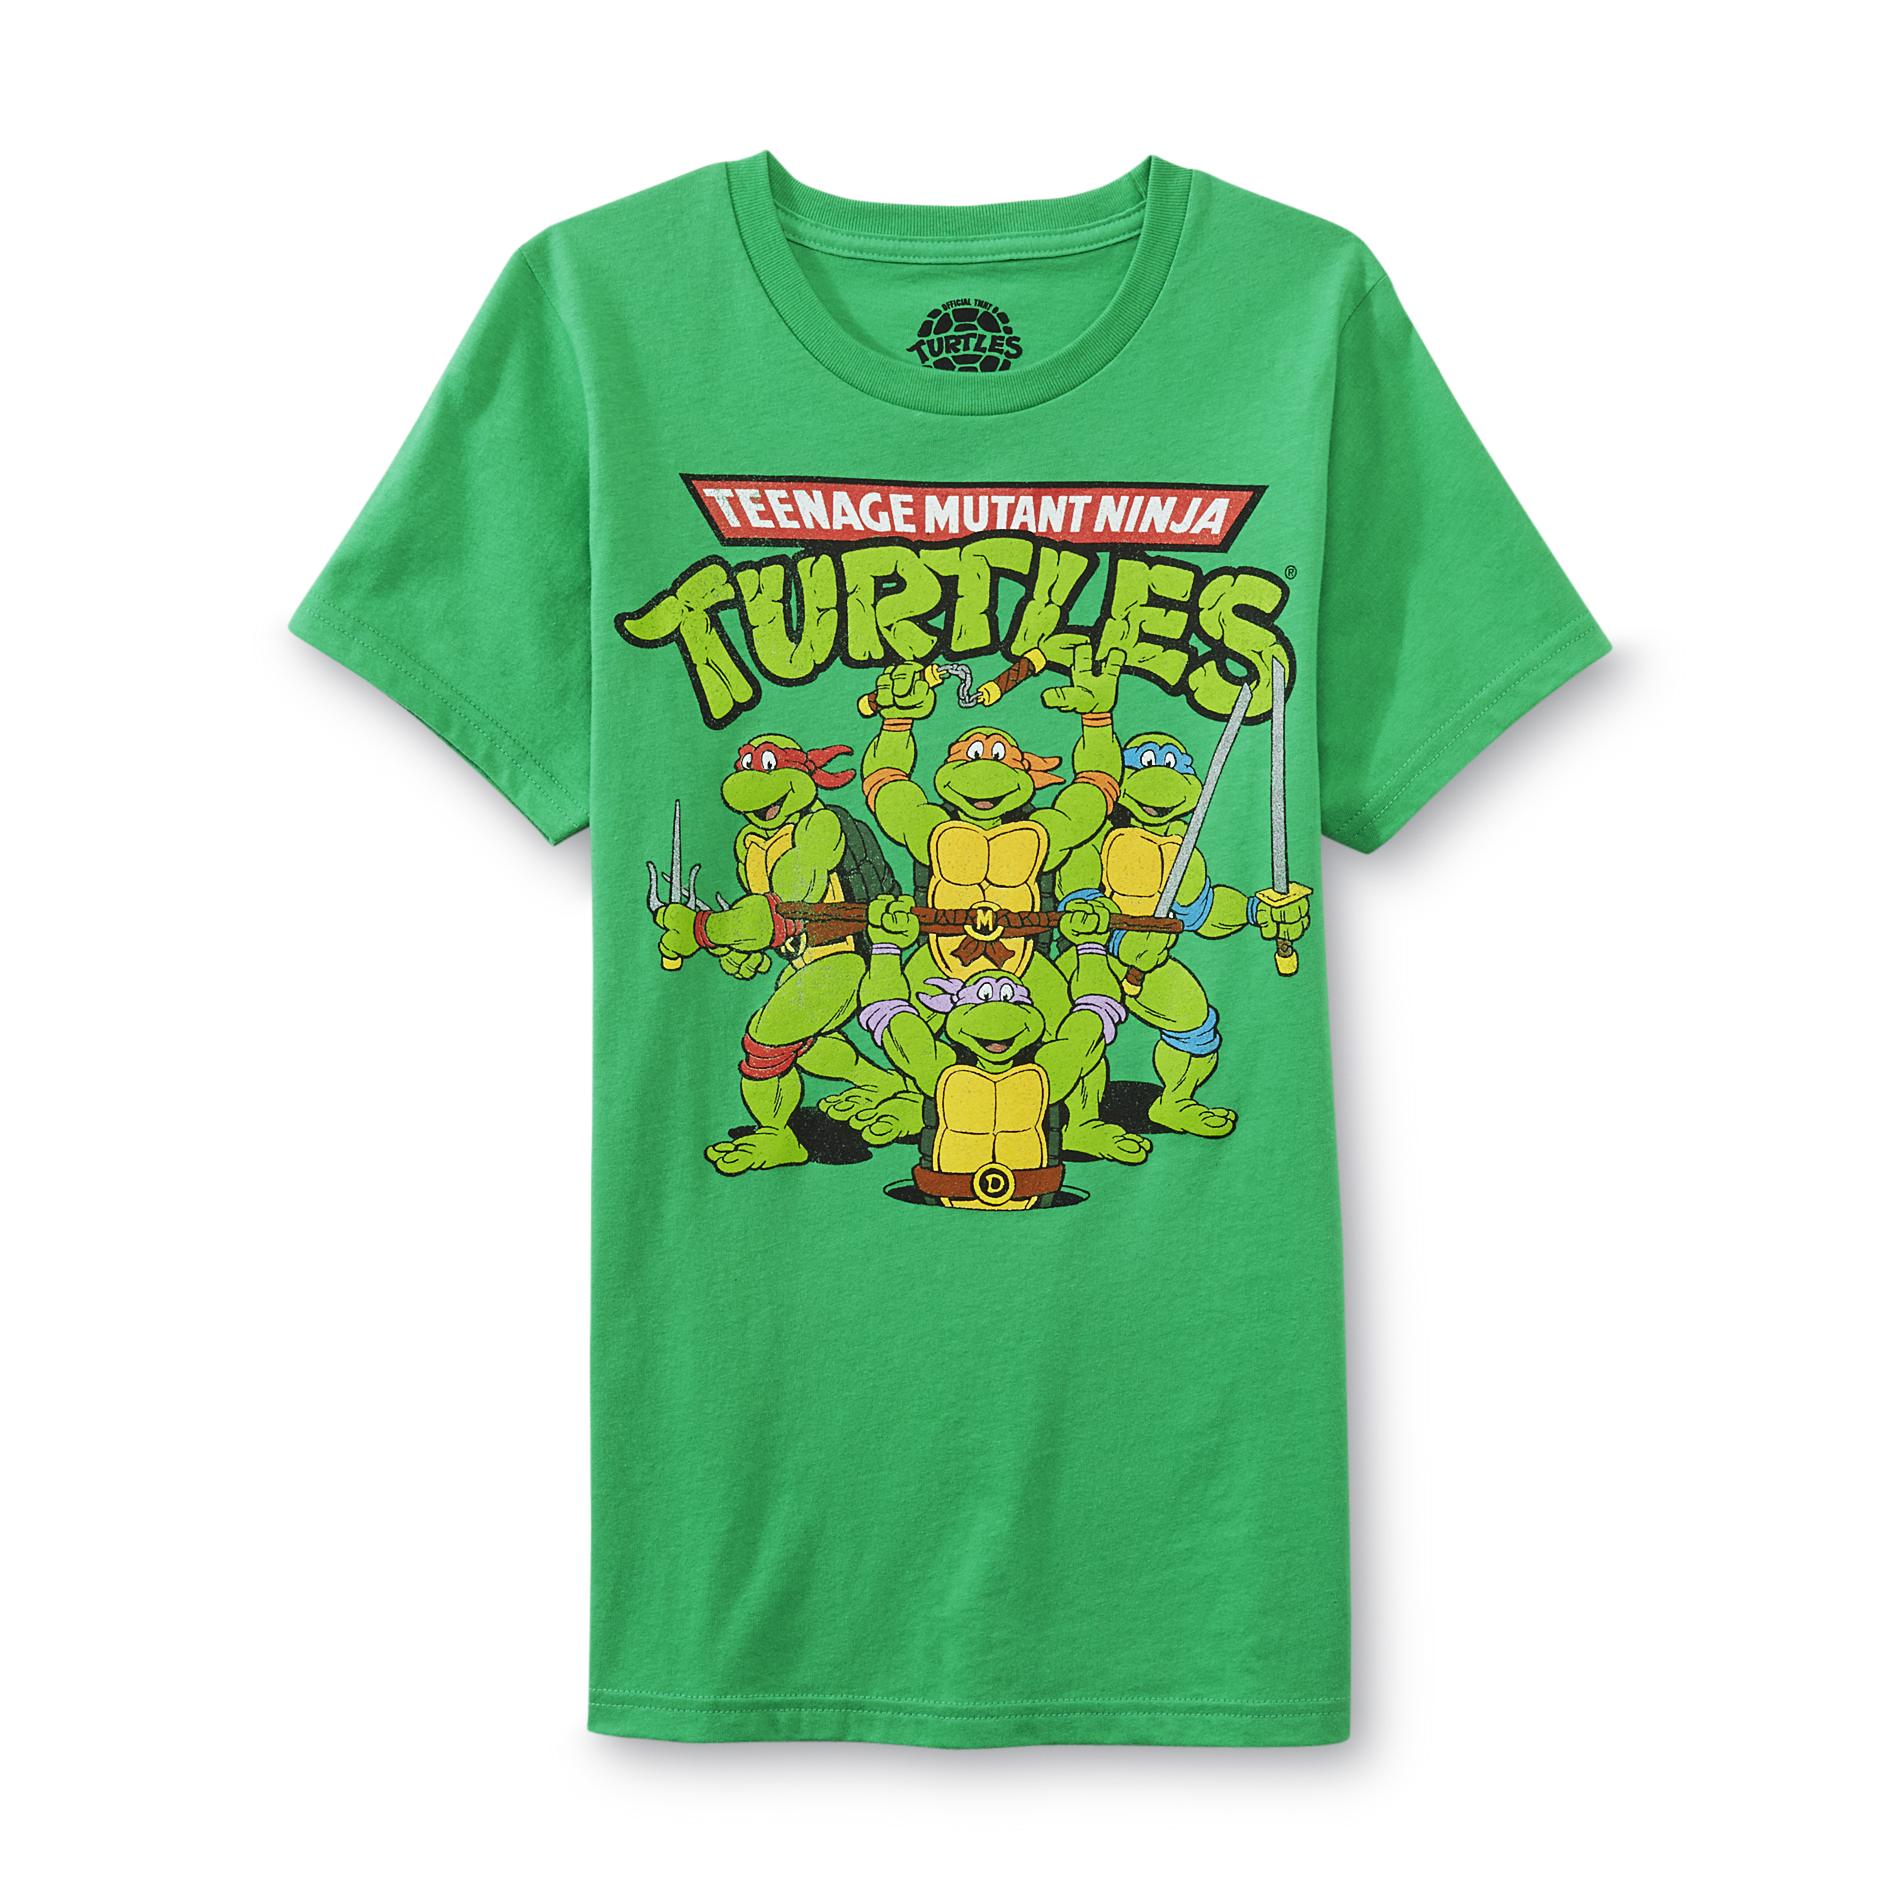 Women's Graphic T-Shirt - Teenage Mutant Ninja Turtles